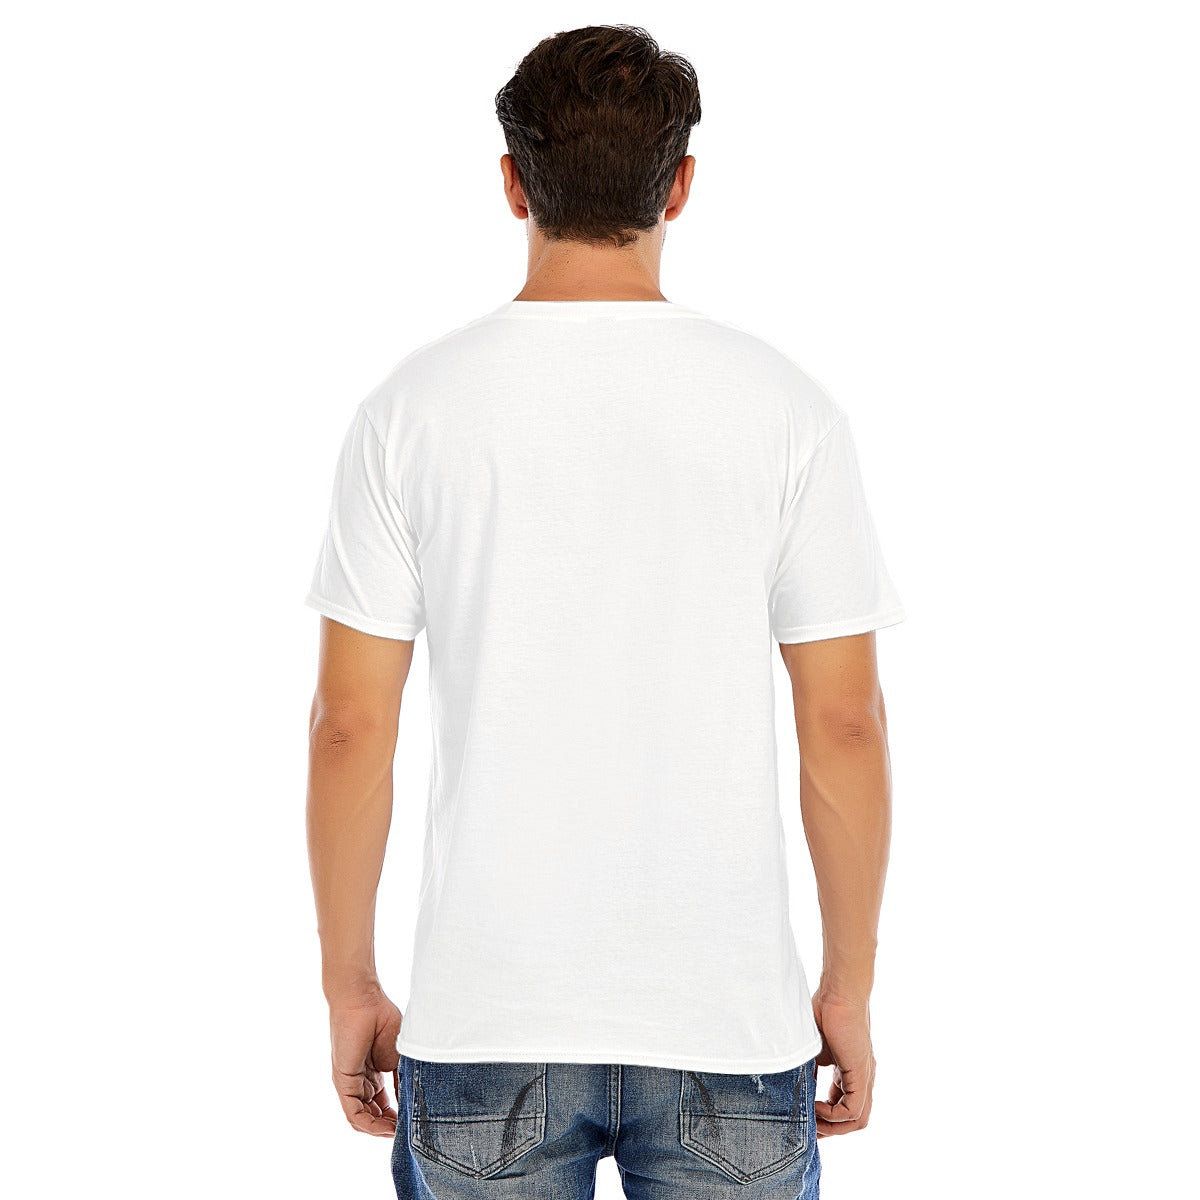 "Sal Mineo" T-shirt